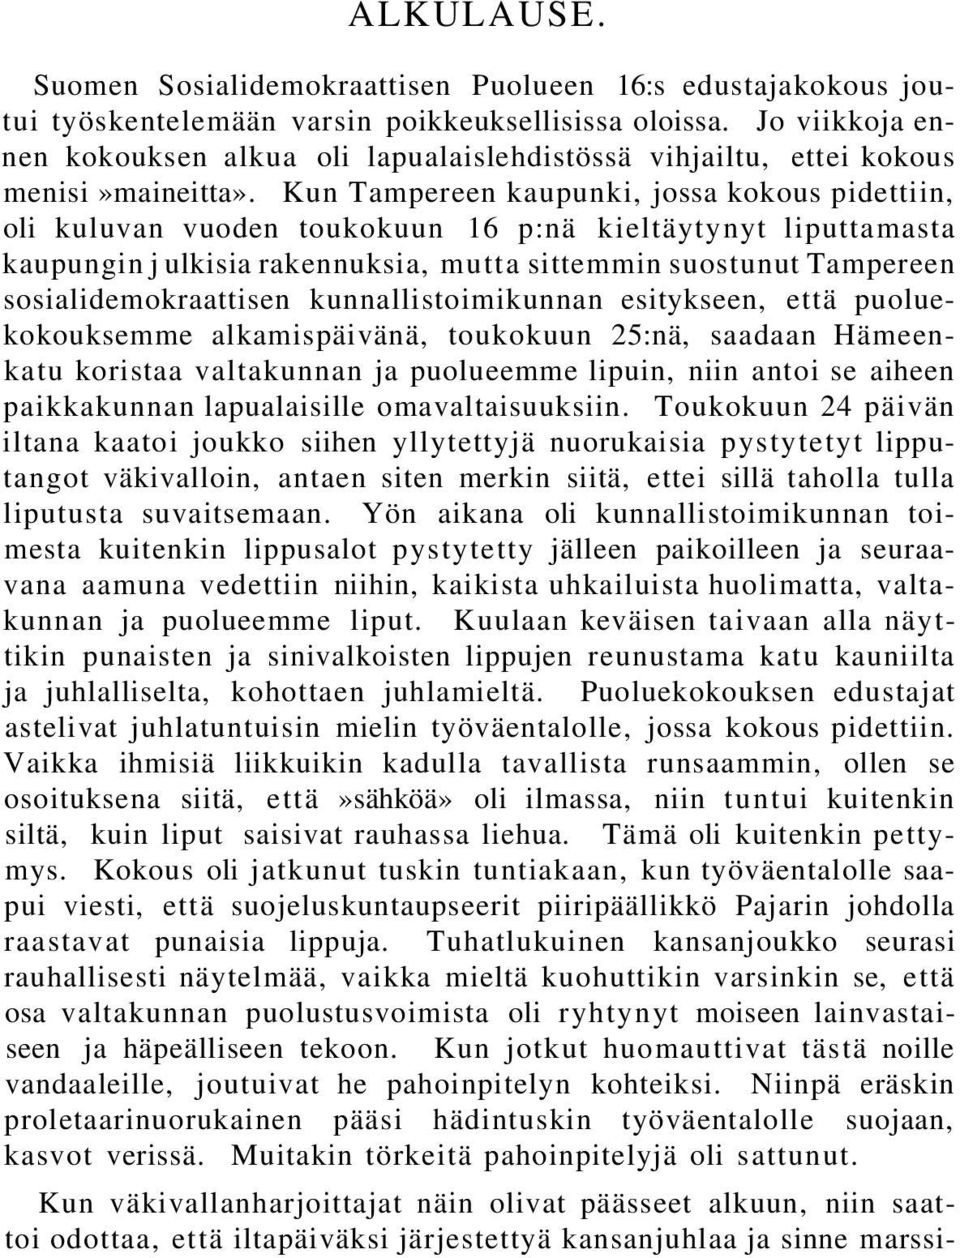 Kun Tampereen kaupunki, jossa kokous pidettiin, oli kuluvan vuoden toukokuun 16 p:nä kieltäytynyt liputtamasta kaupungin j ulkisia rakennuksia, mutta sittemmin suostunut Tampereen